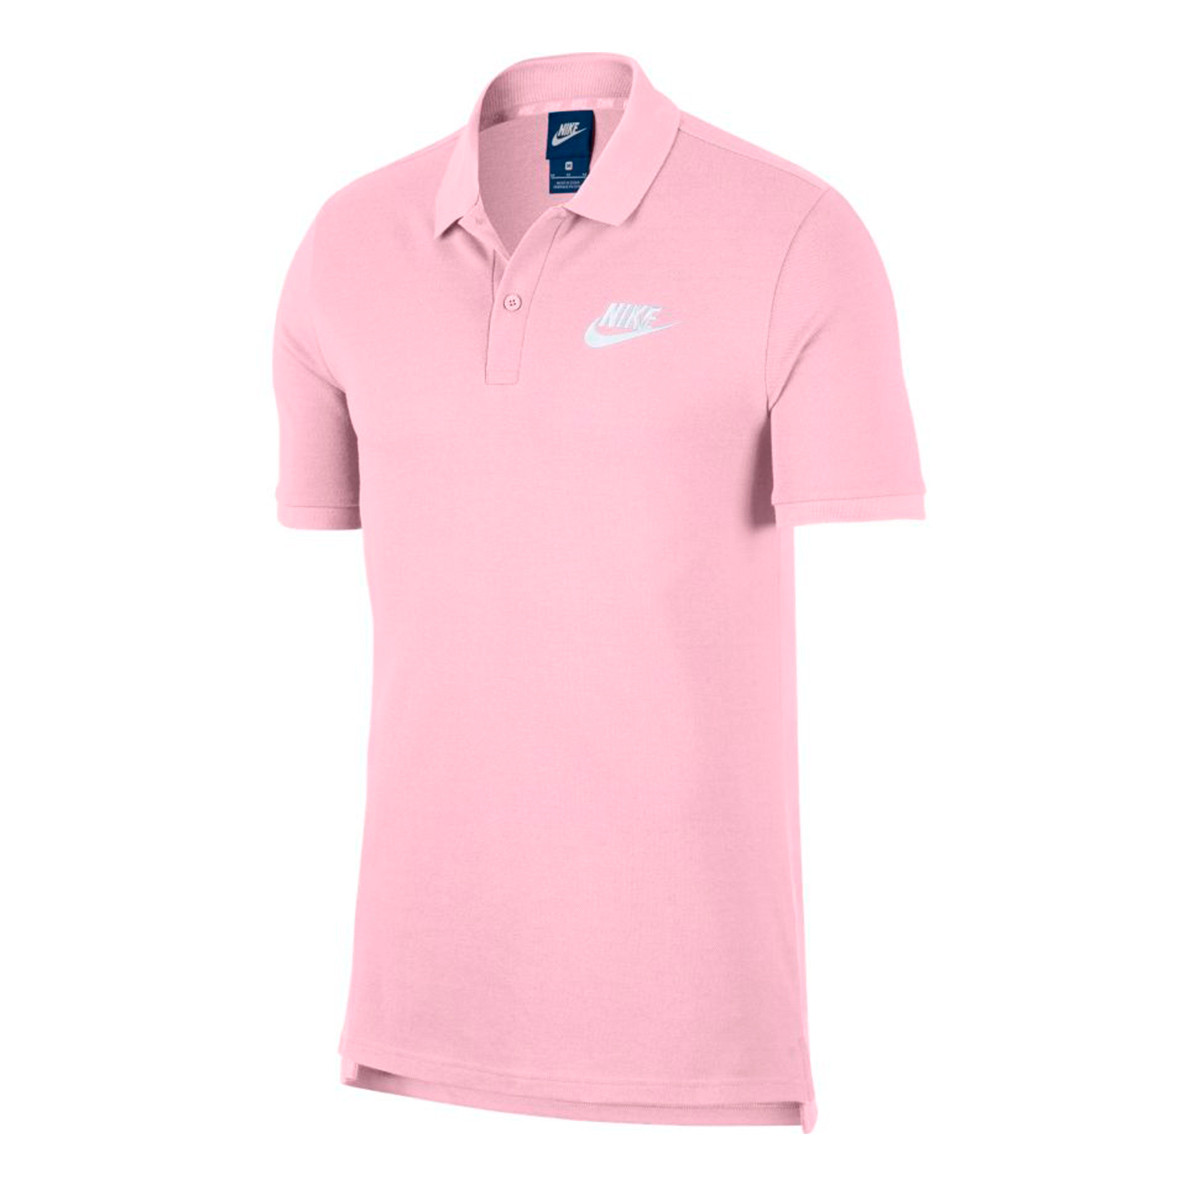 Polo Nike Sportswear Pink foam-White - Tienda de fútbol Fútbol Emotion